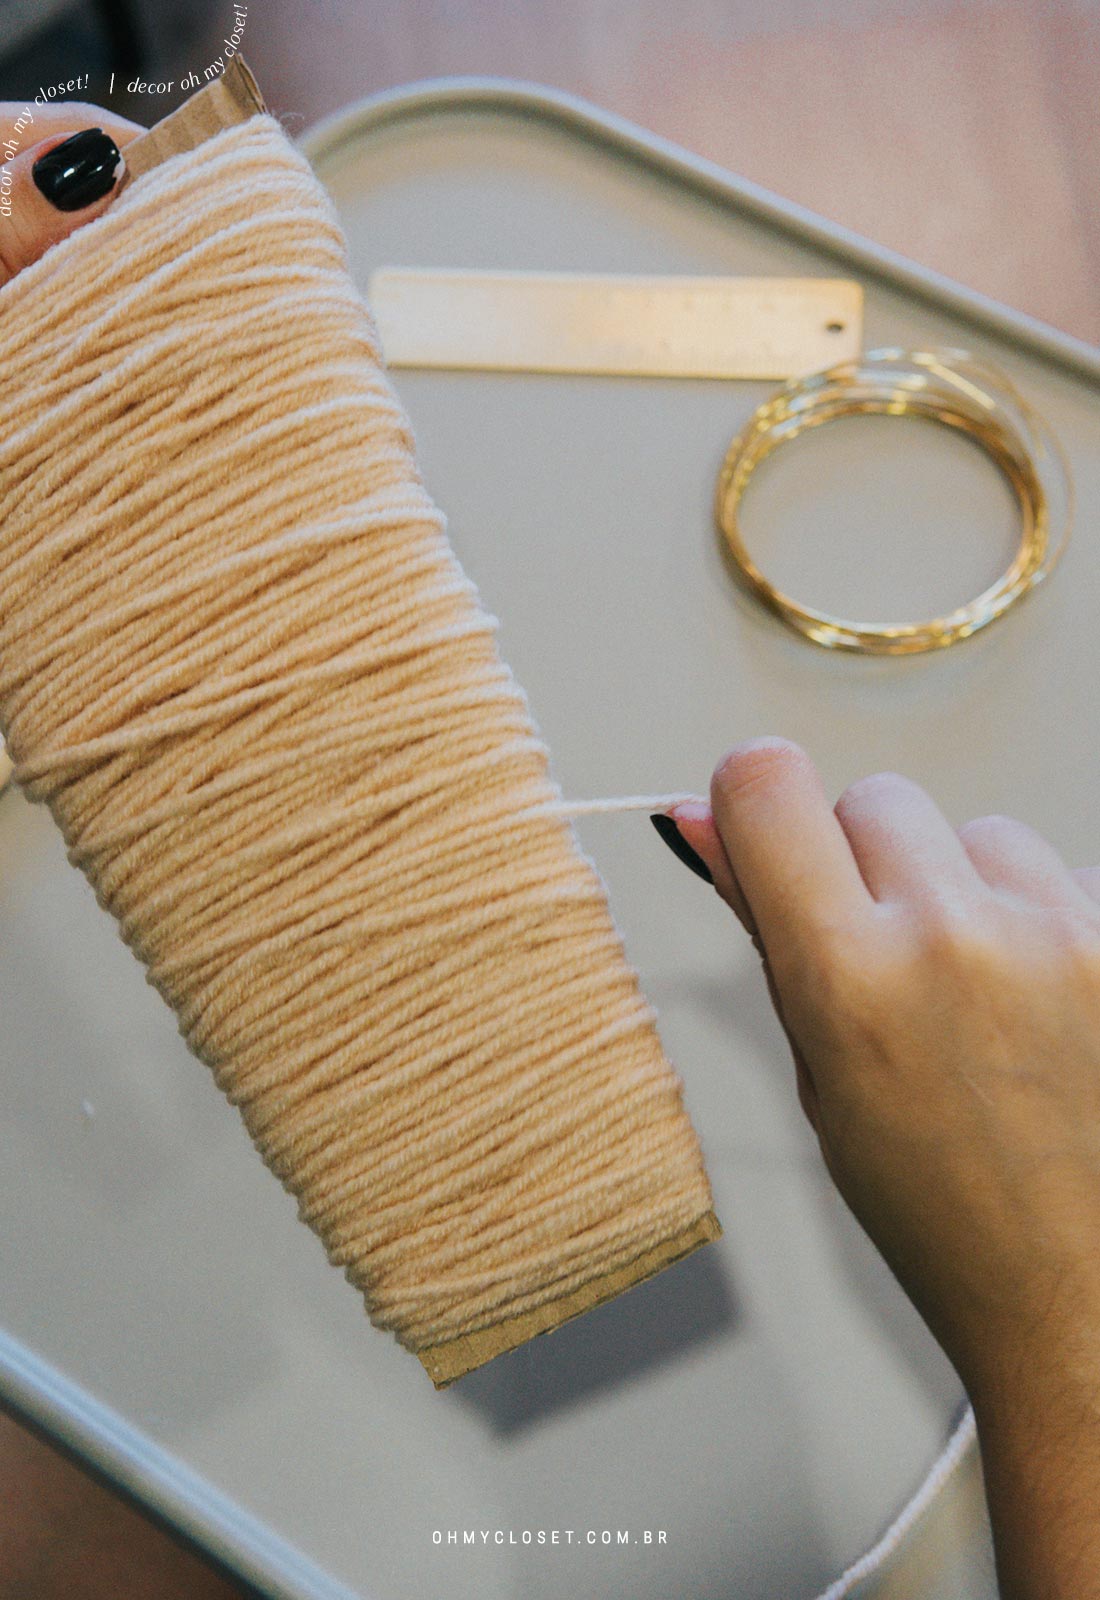 Passo 2: Enrolando a lã no molde.